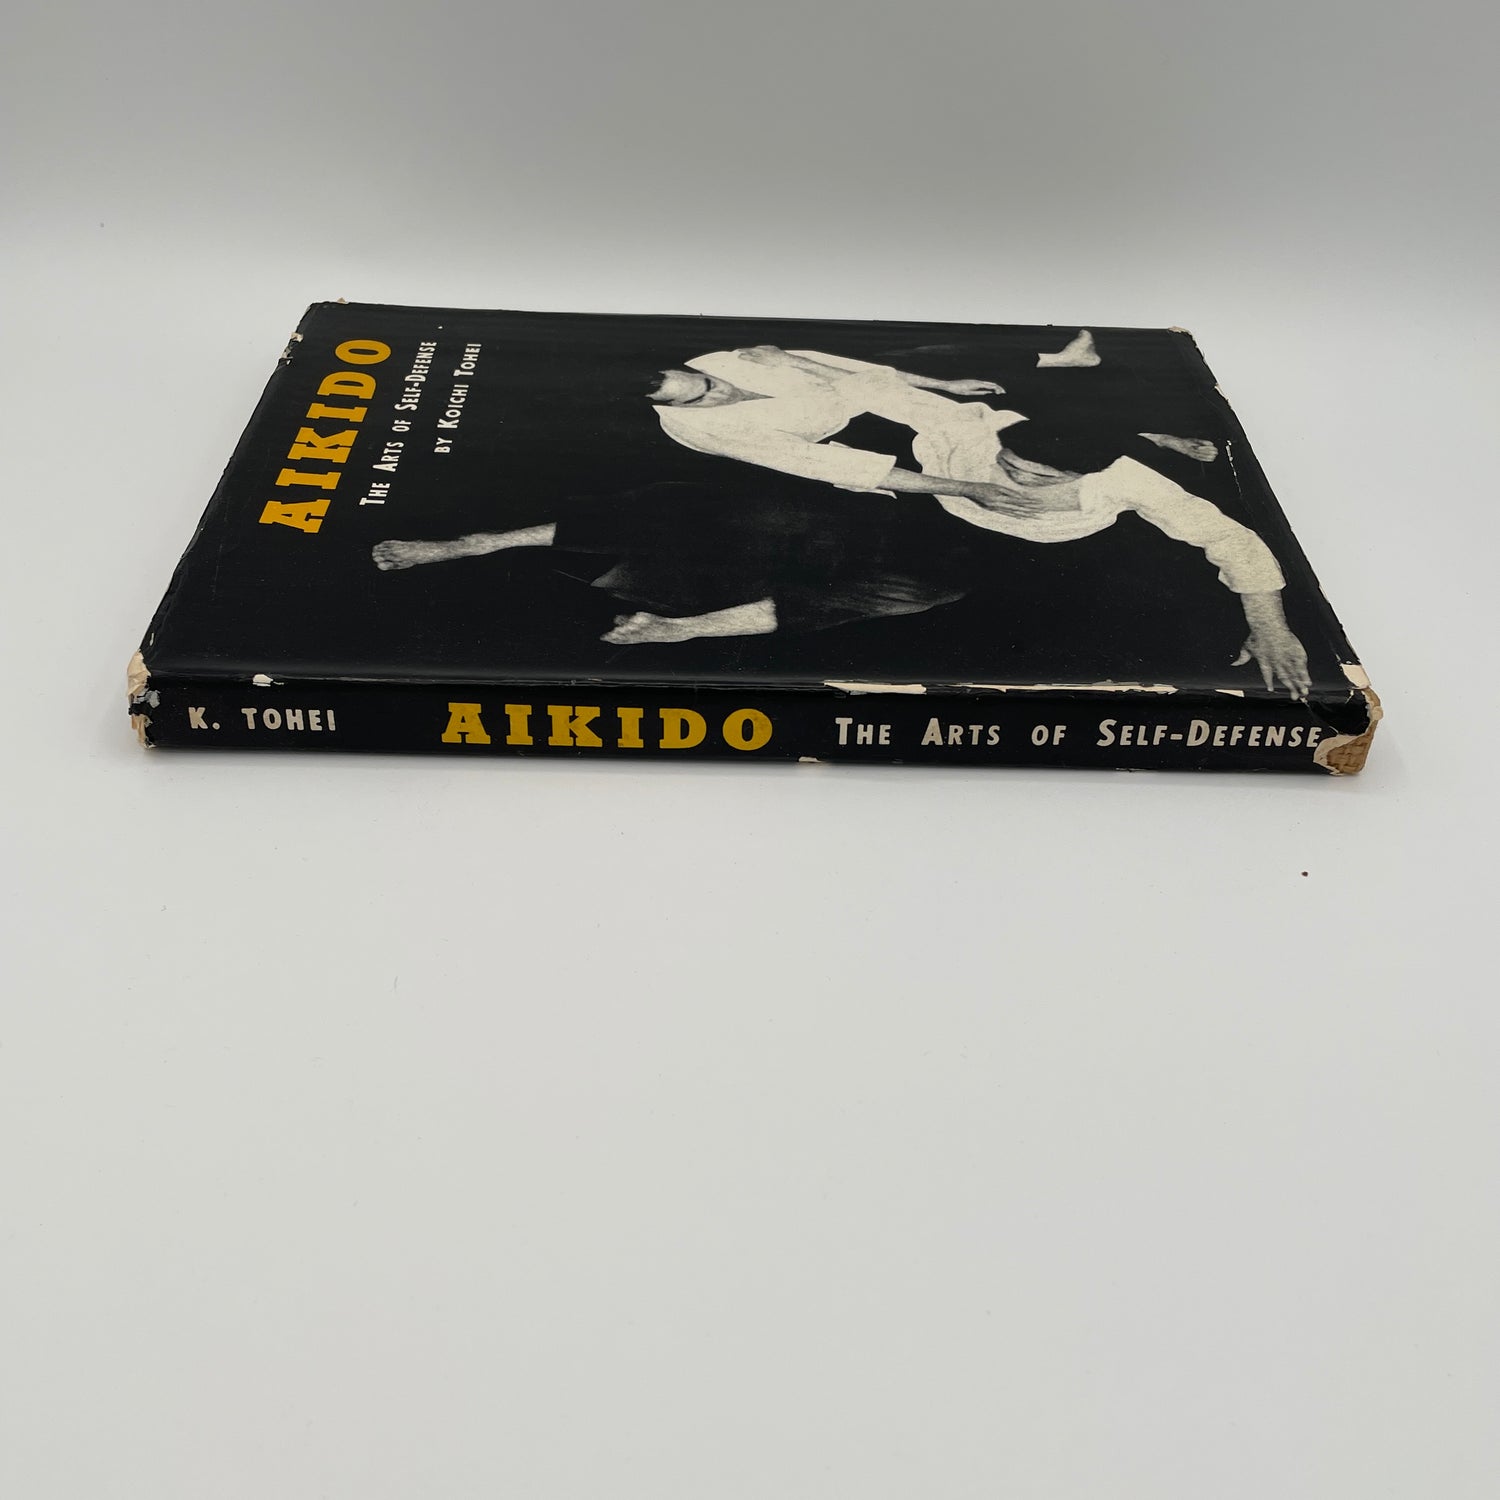 Libro de artes de defensa personal de Aikido de Koichi Tohei (tapa dura) (usado) 